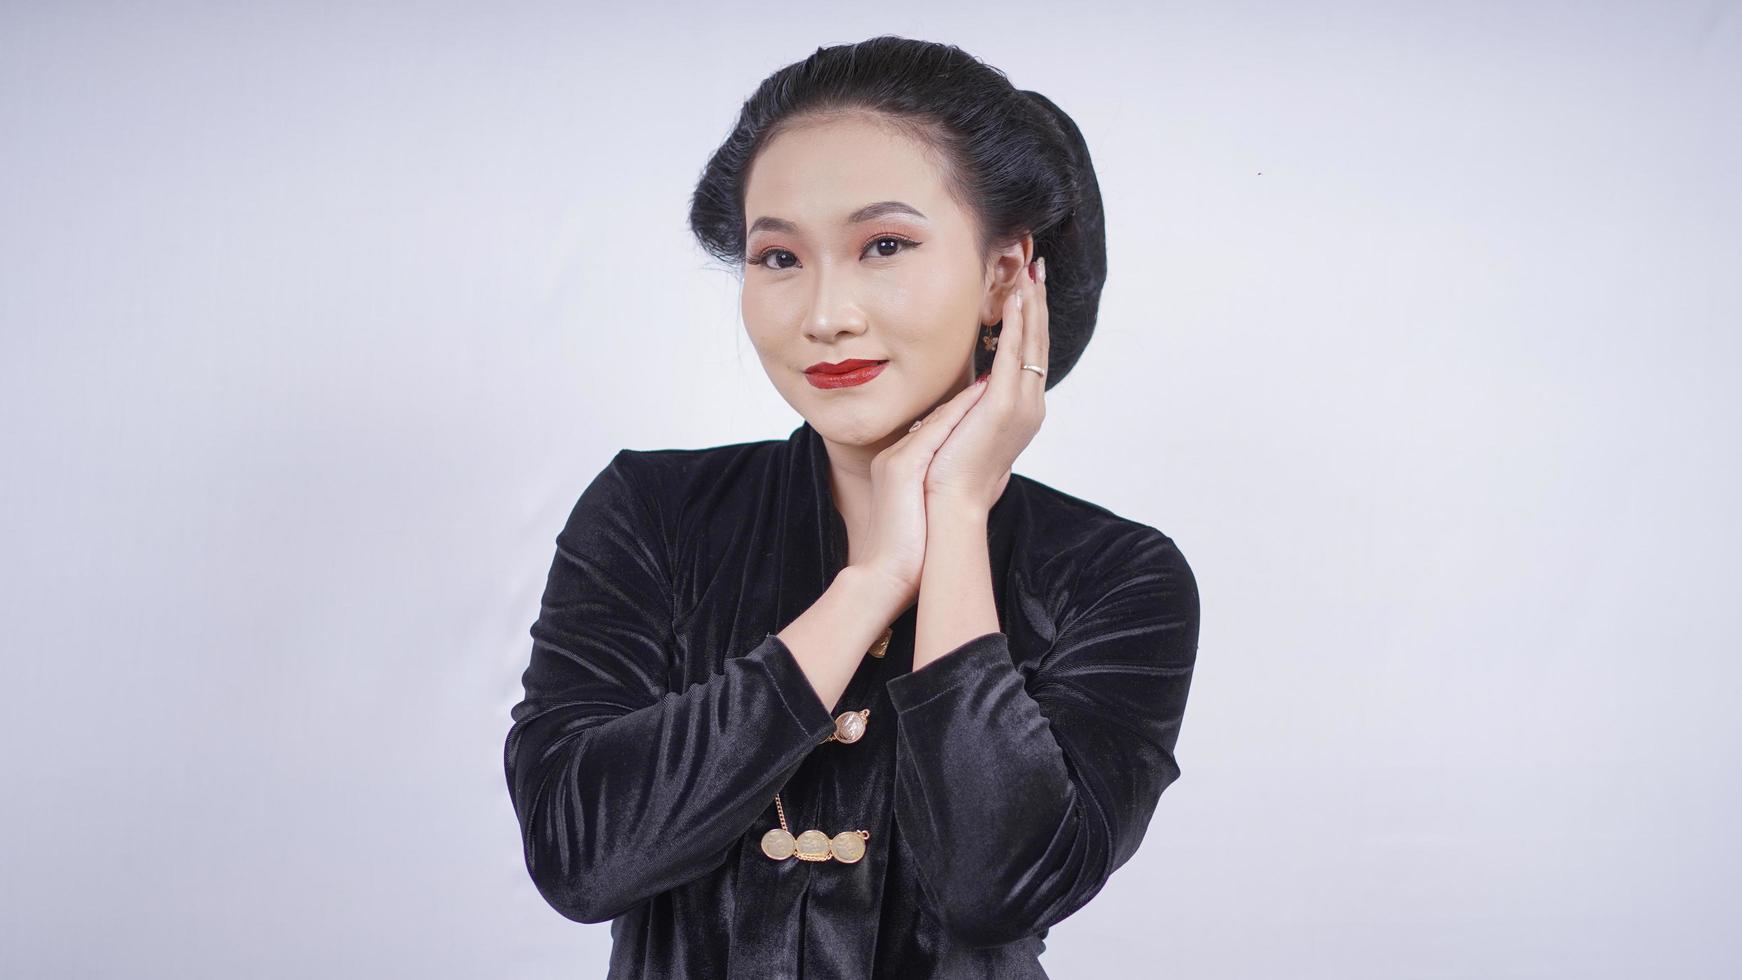 Aziatische vrouw in zwarte kebaya lachend gezicht geïsoleerd op een witte achtergrond foto